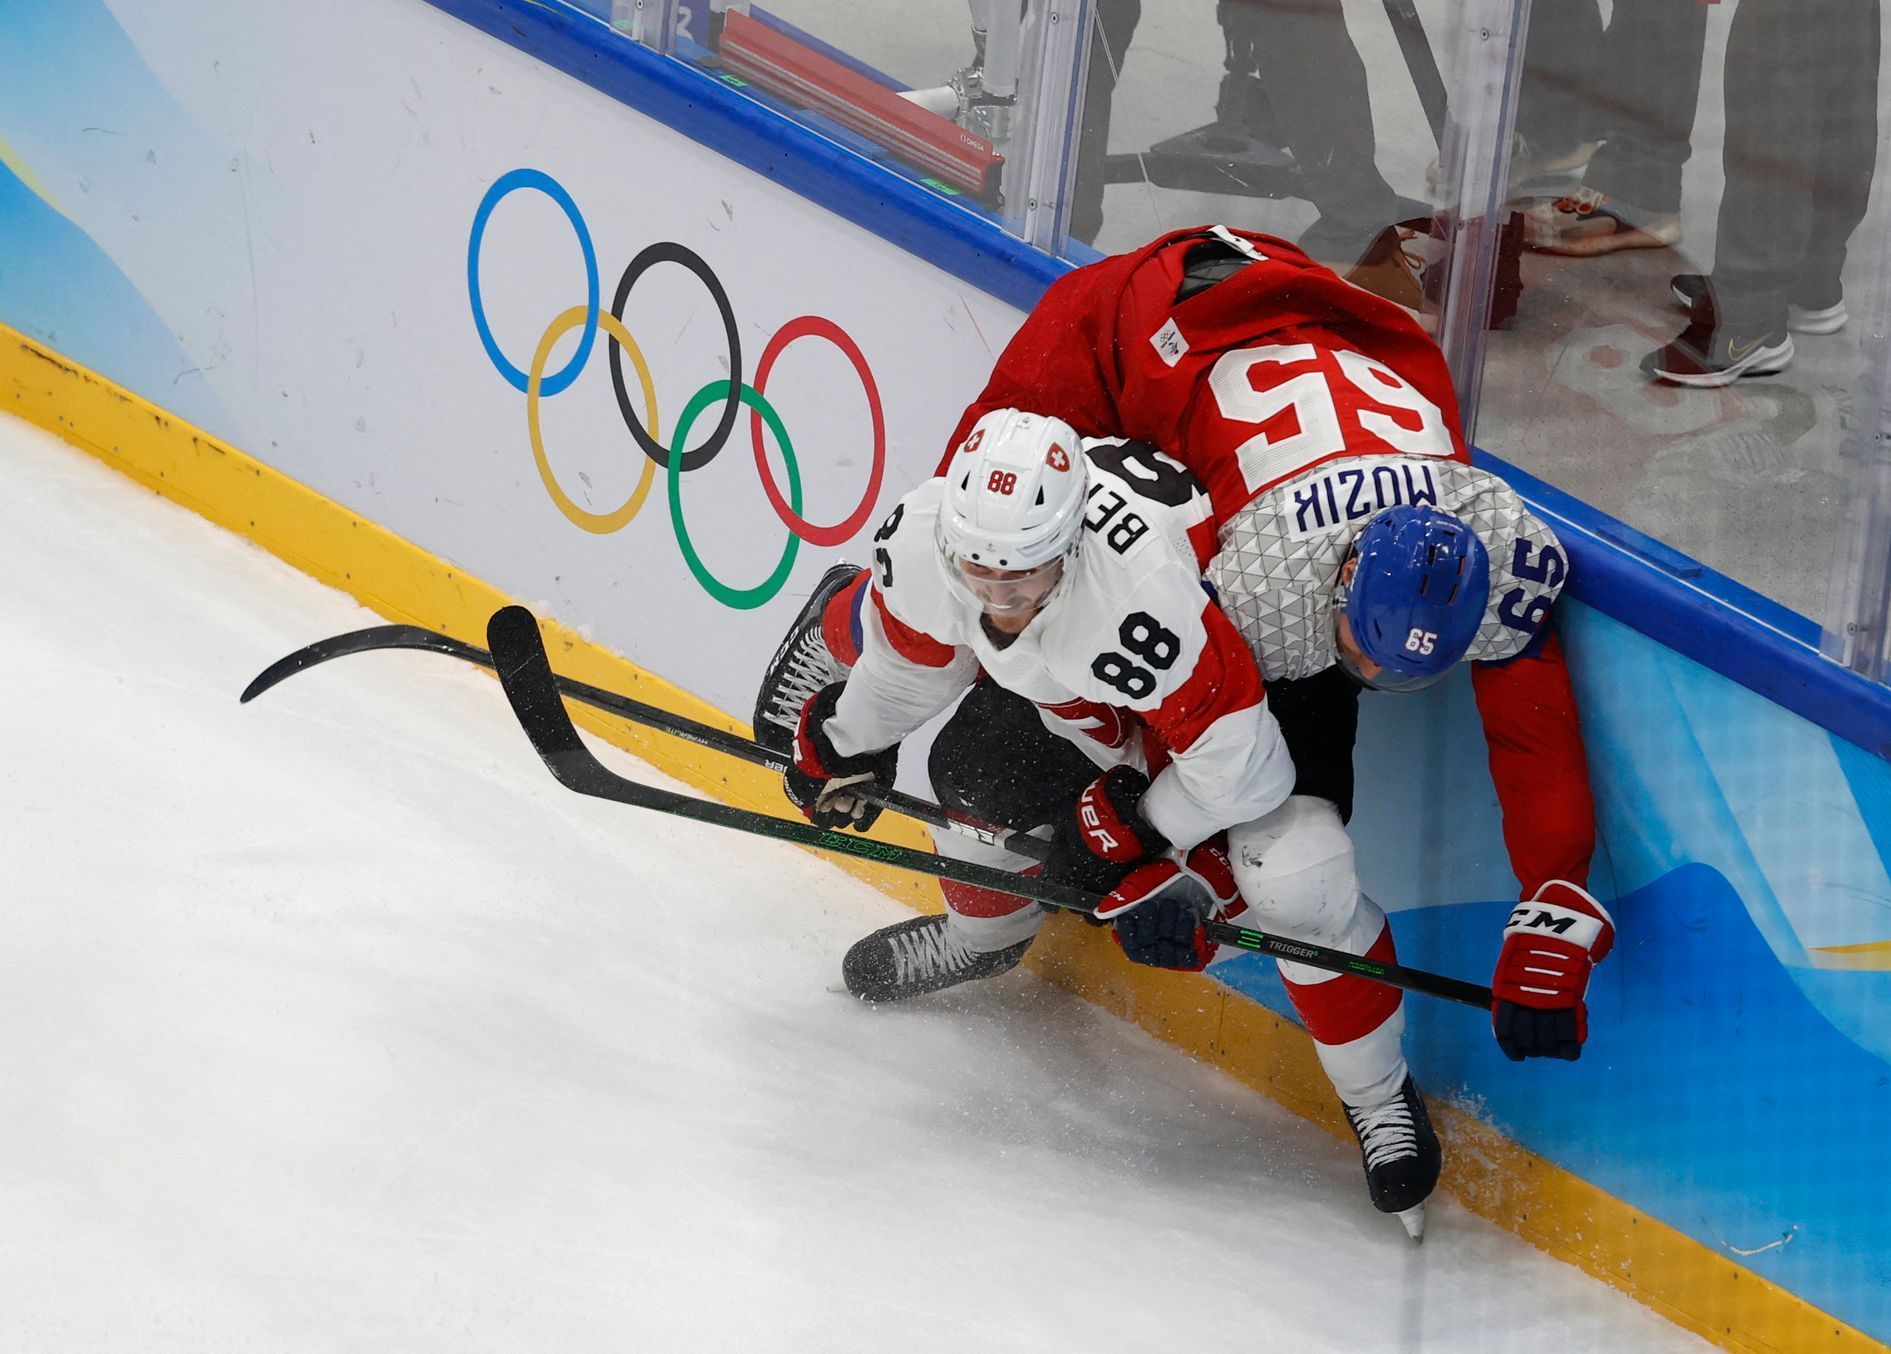 Christoph Bertschy a Vojtěch Mozík v zápase Česko - Švýcarsko na ZOH 2022 v Pekingu